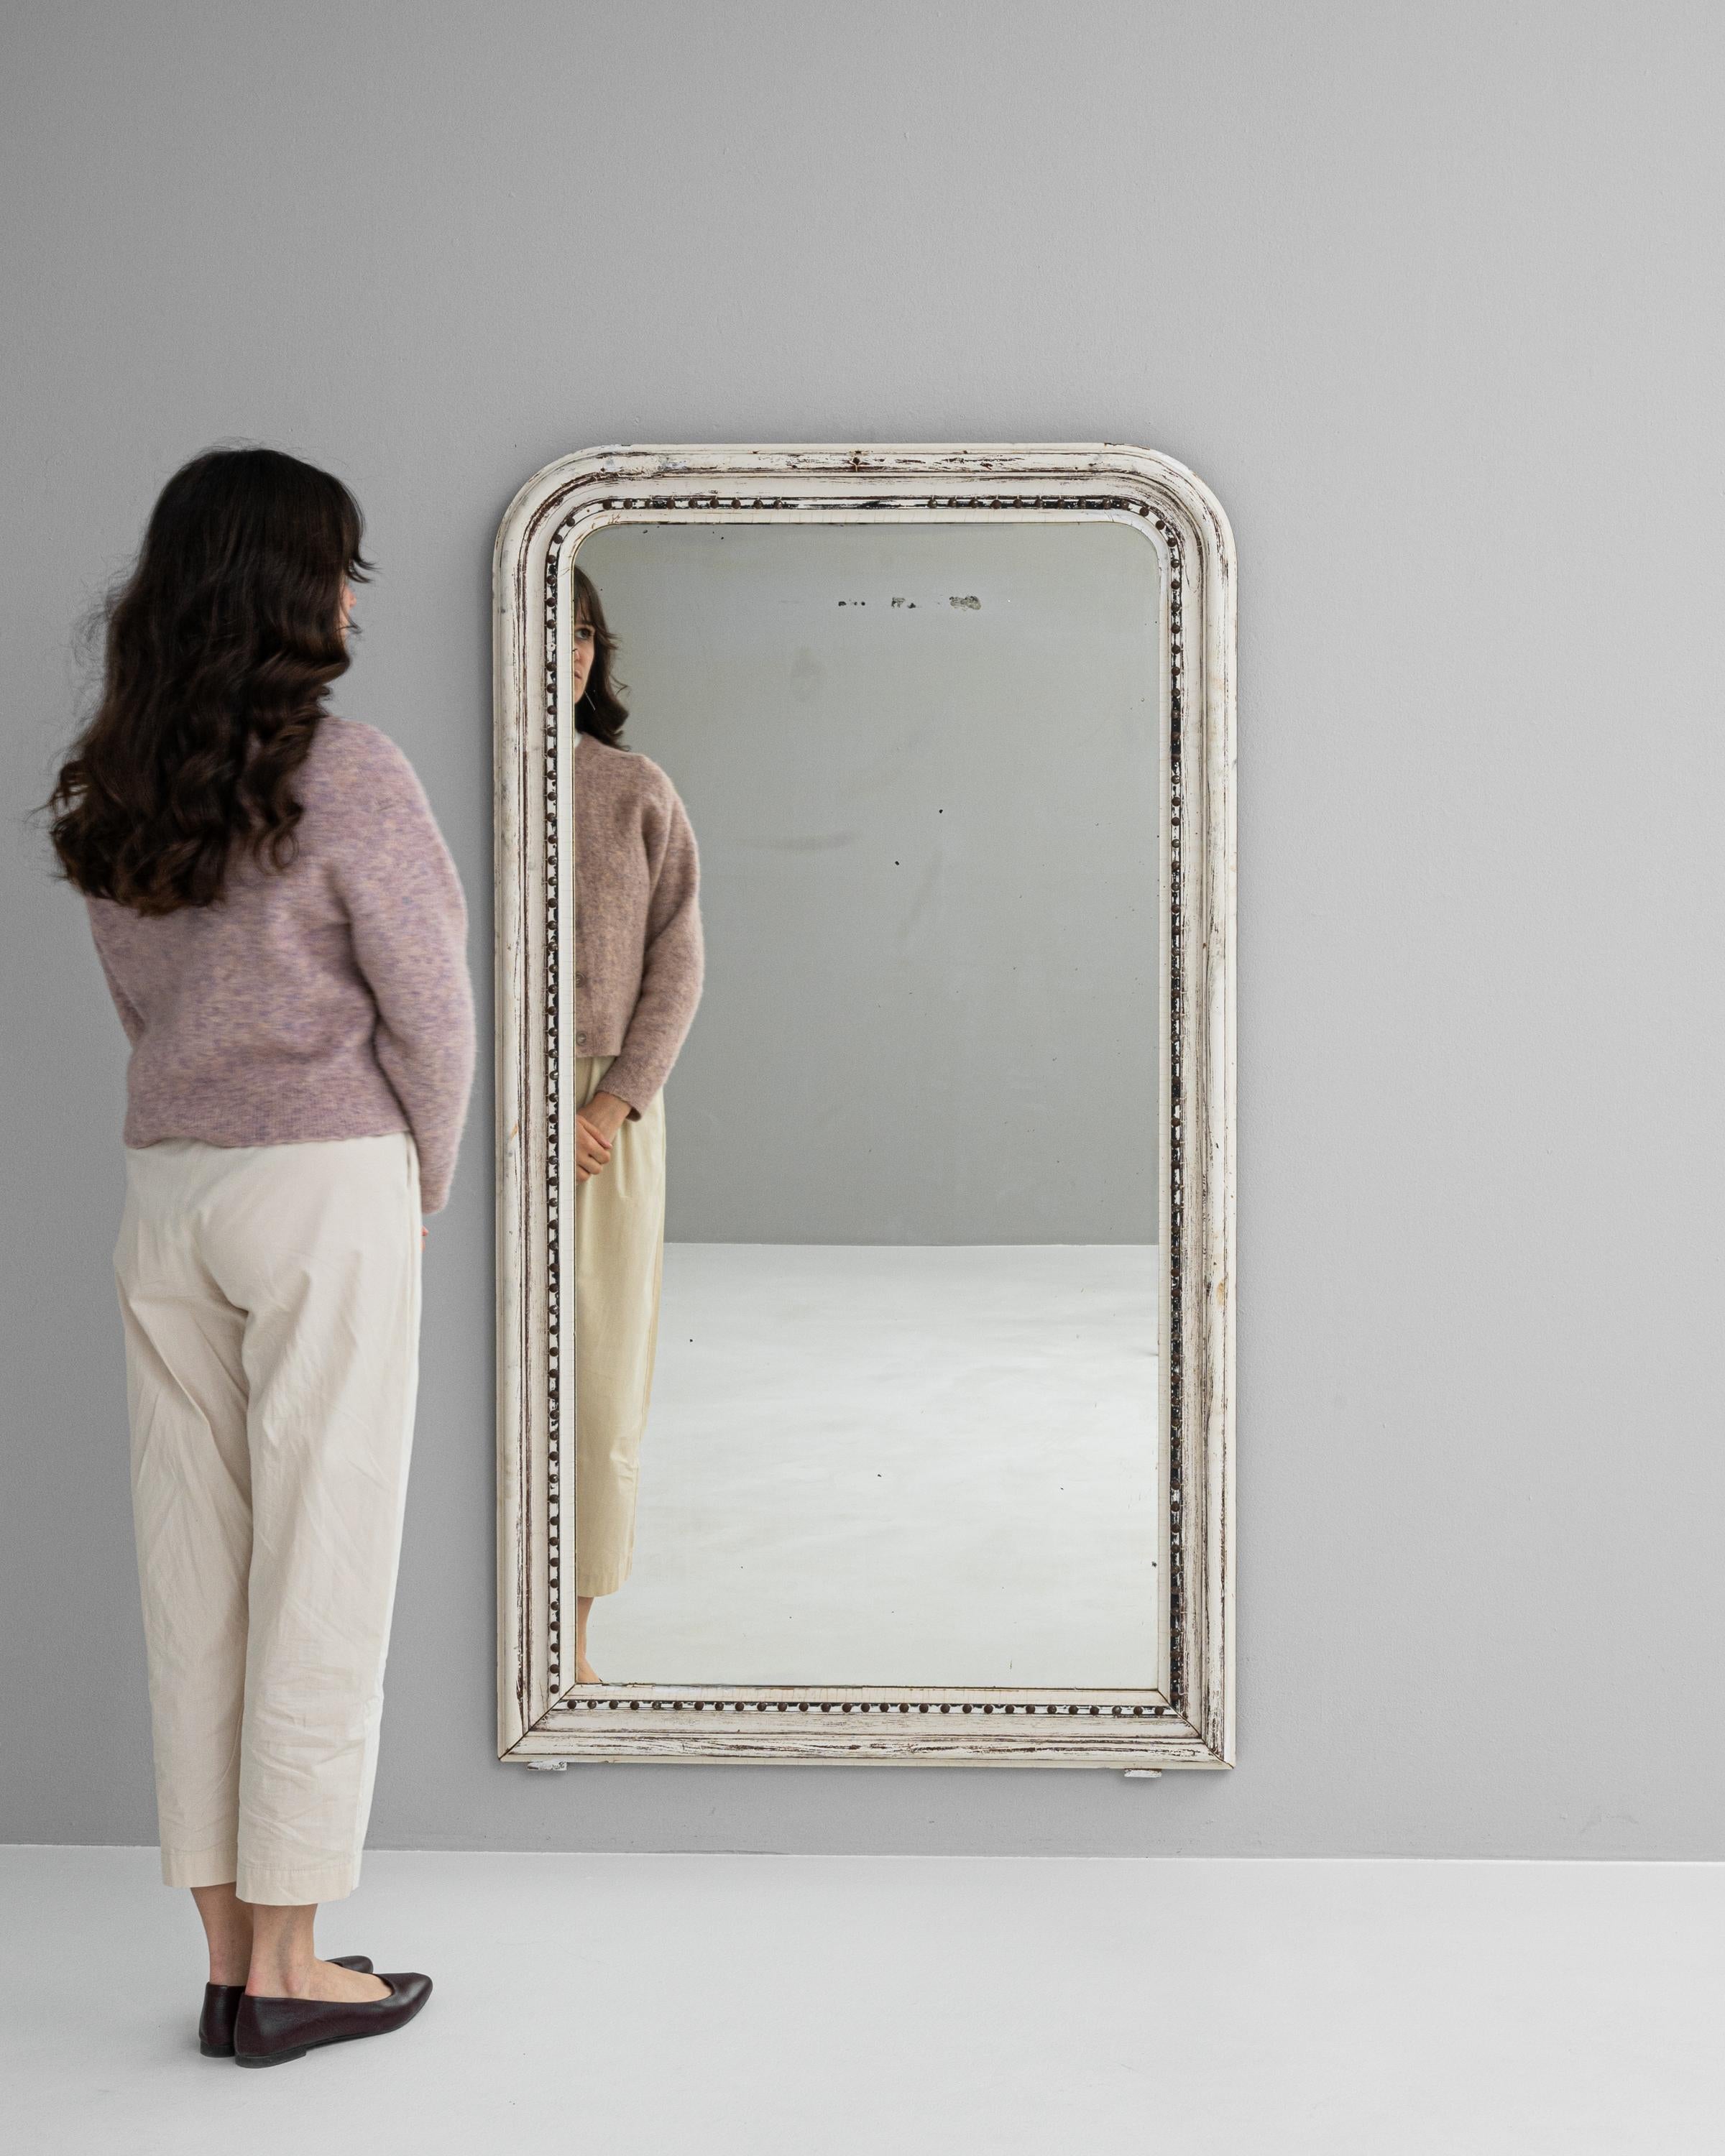 Versetzen Sie sich mit der Eleganz unseres weiß patinierten Spiegels aus französischem Holz des 19. Jahrhunderts in die Vergangenheit zurück - ein wahres Schmuckstück für jedes Zuhause. Dieser exquisite Spiegel wurde in einer Zeit gefertigt, in der